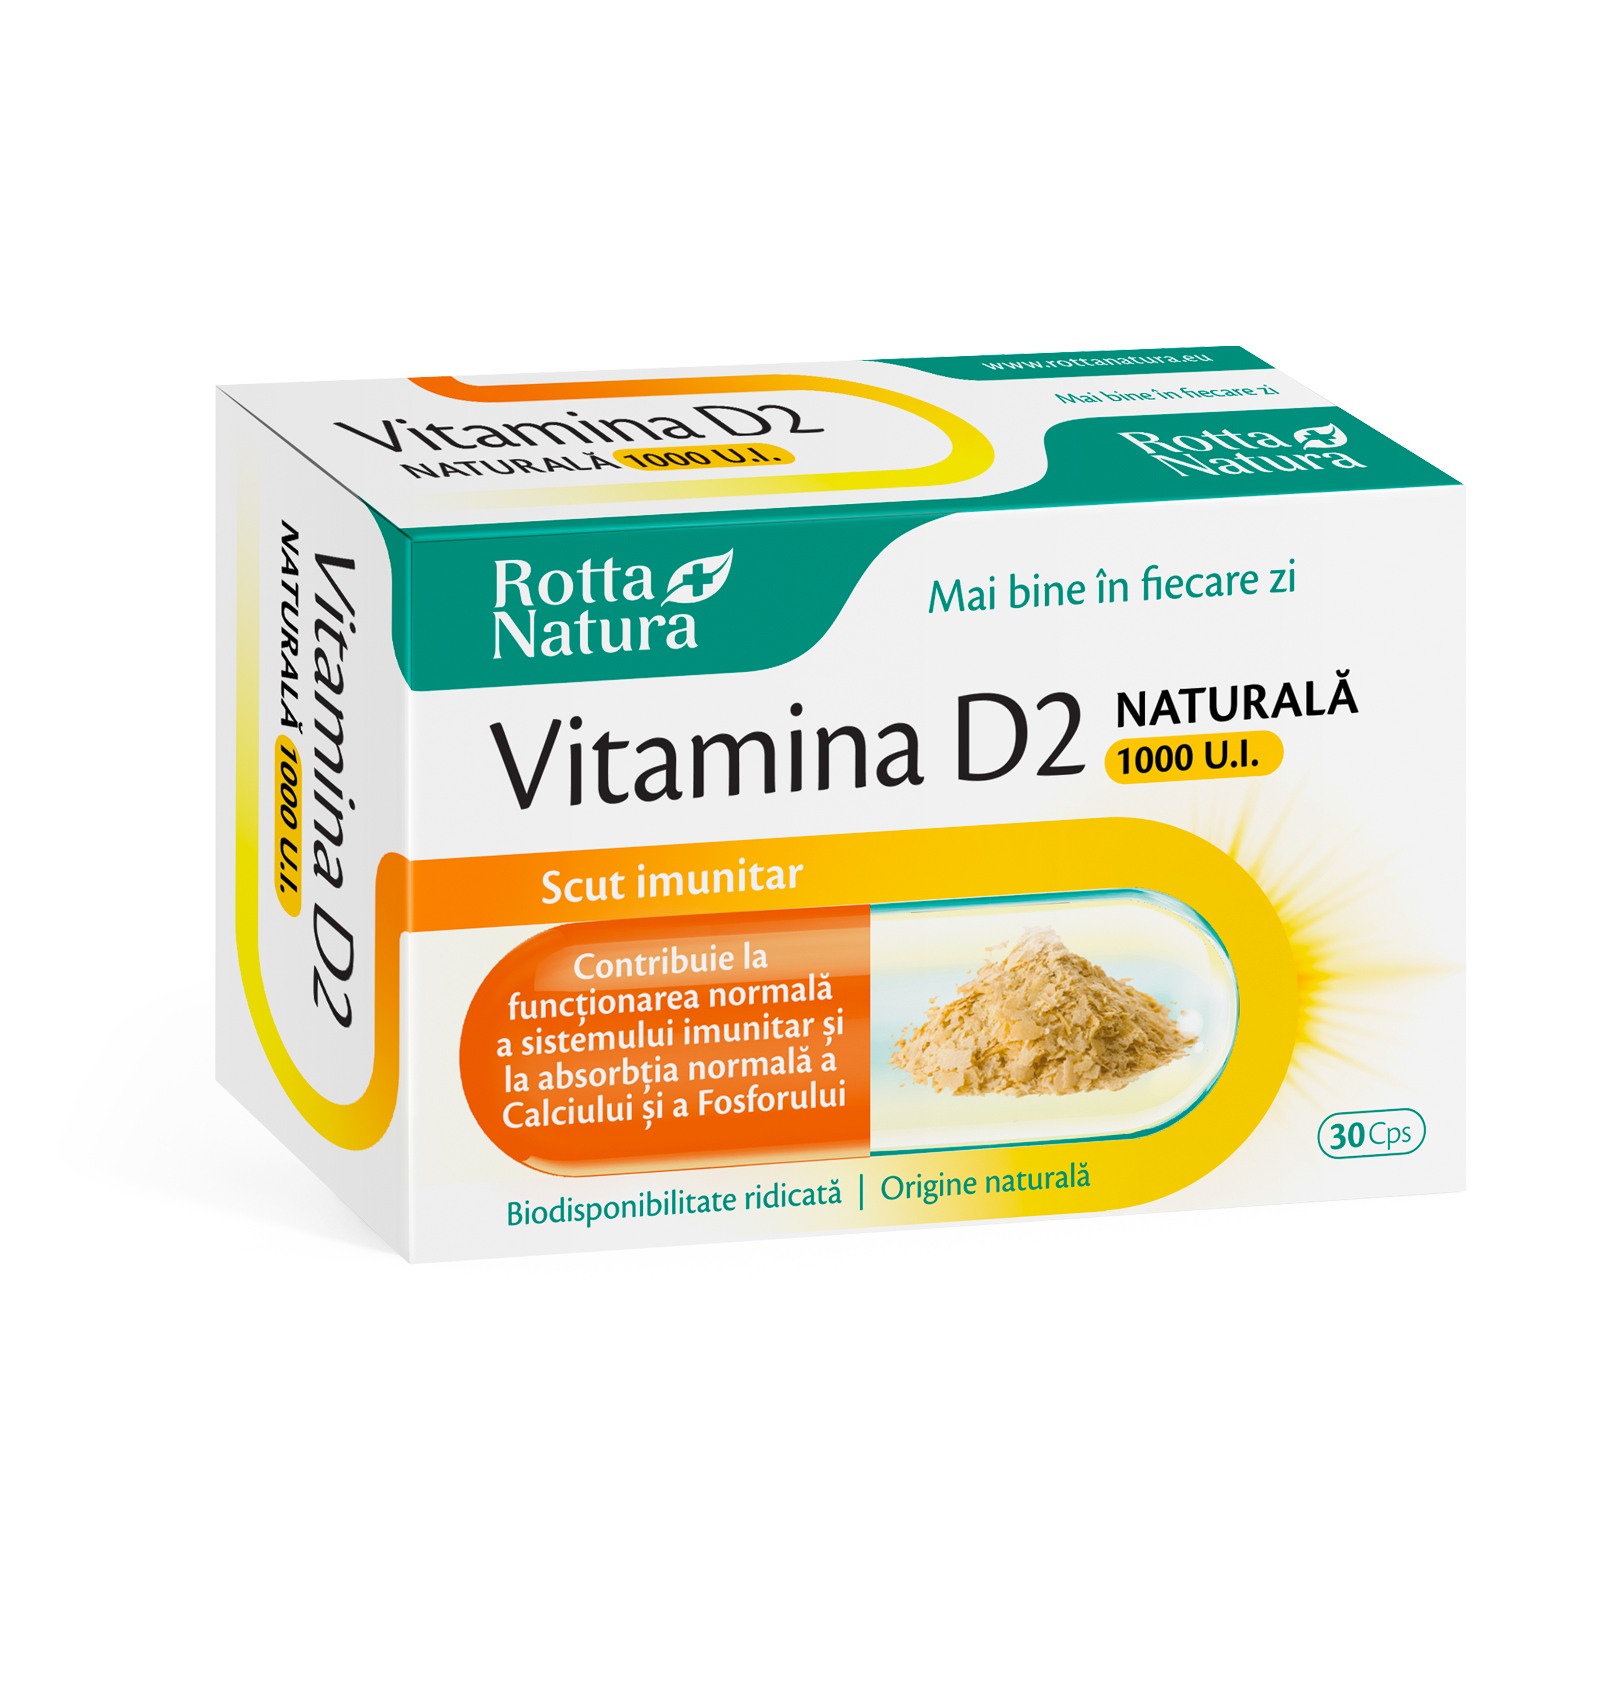 Vitamina D2 naturala 1000 U.I